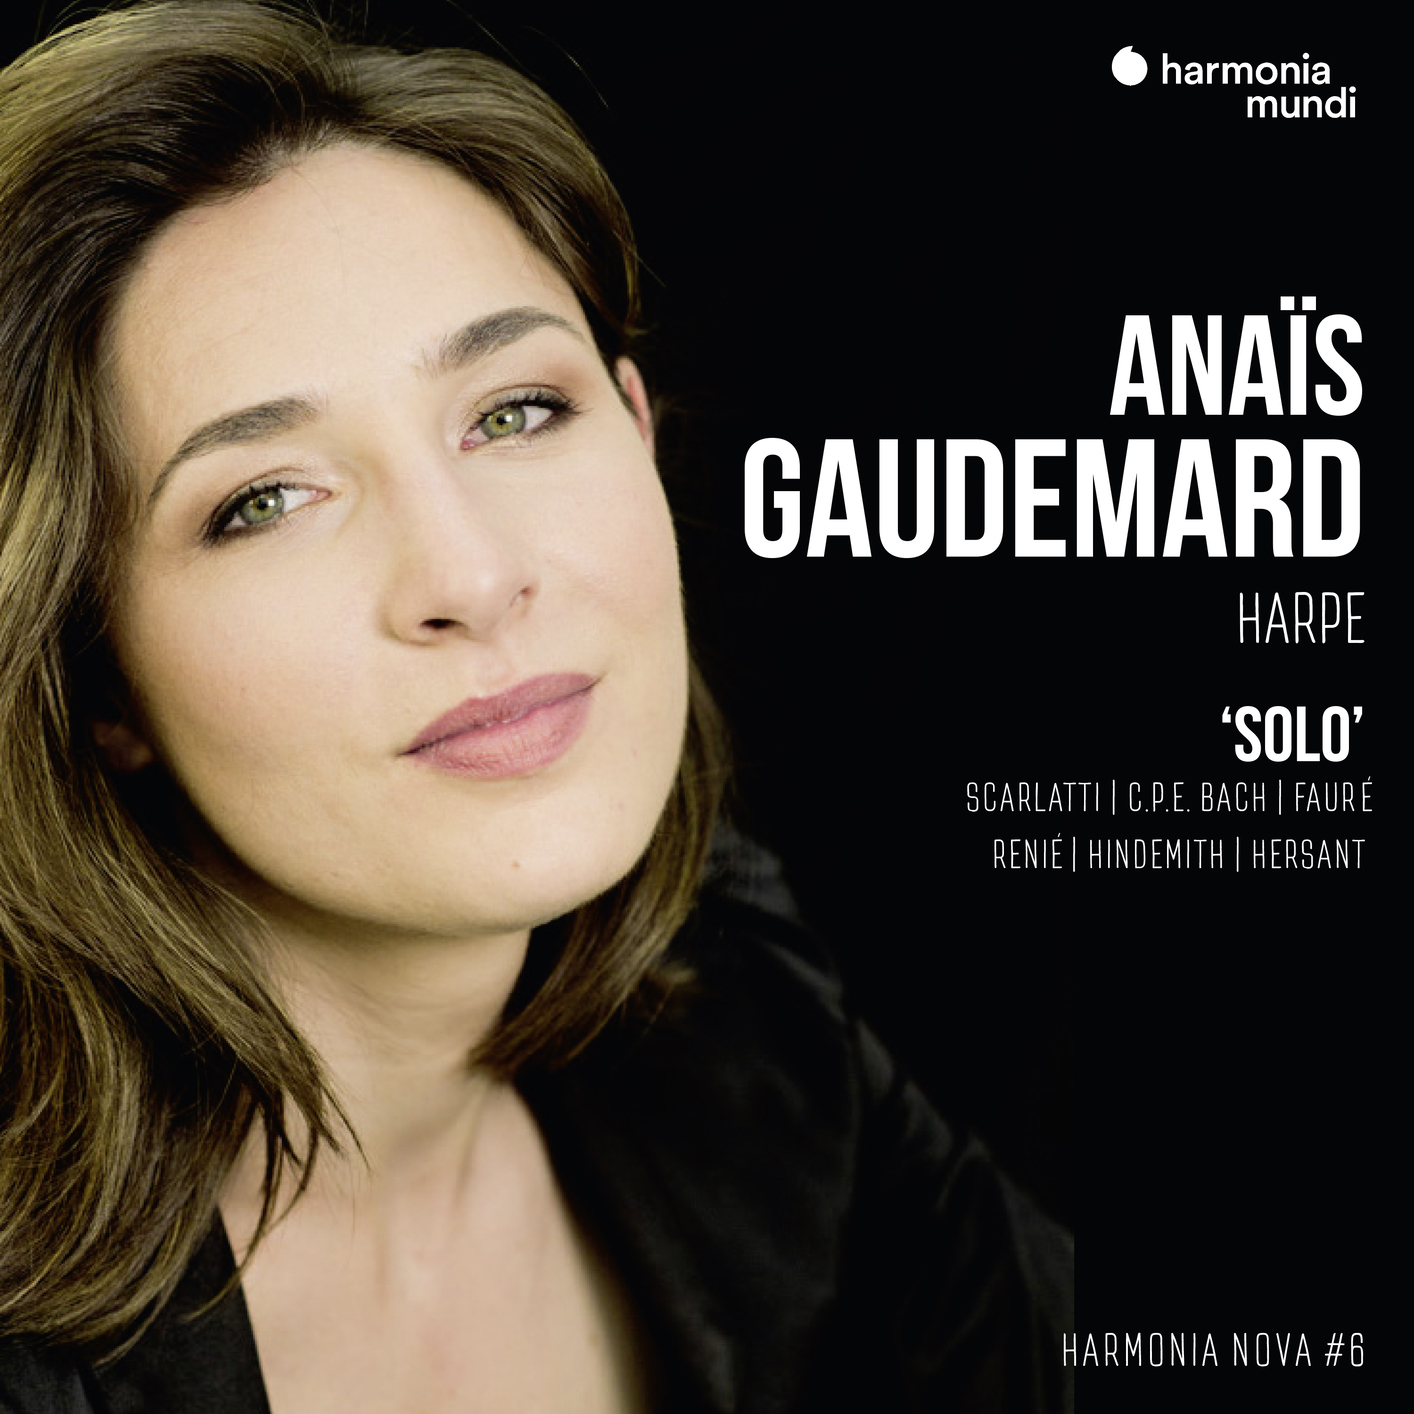 Anais Gaudemard - Anais Gaudemard: Solo - harmonia nova #6 (2019) [FLAC 24bit/88,2kHz]